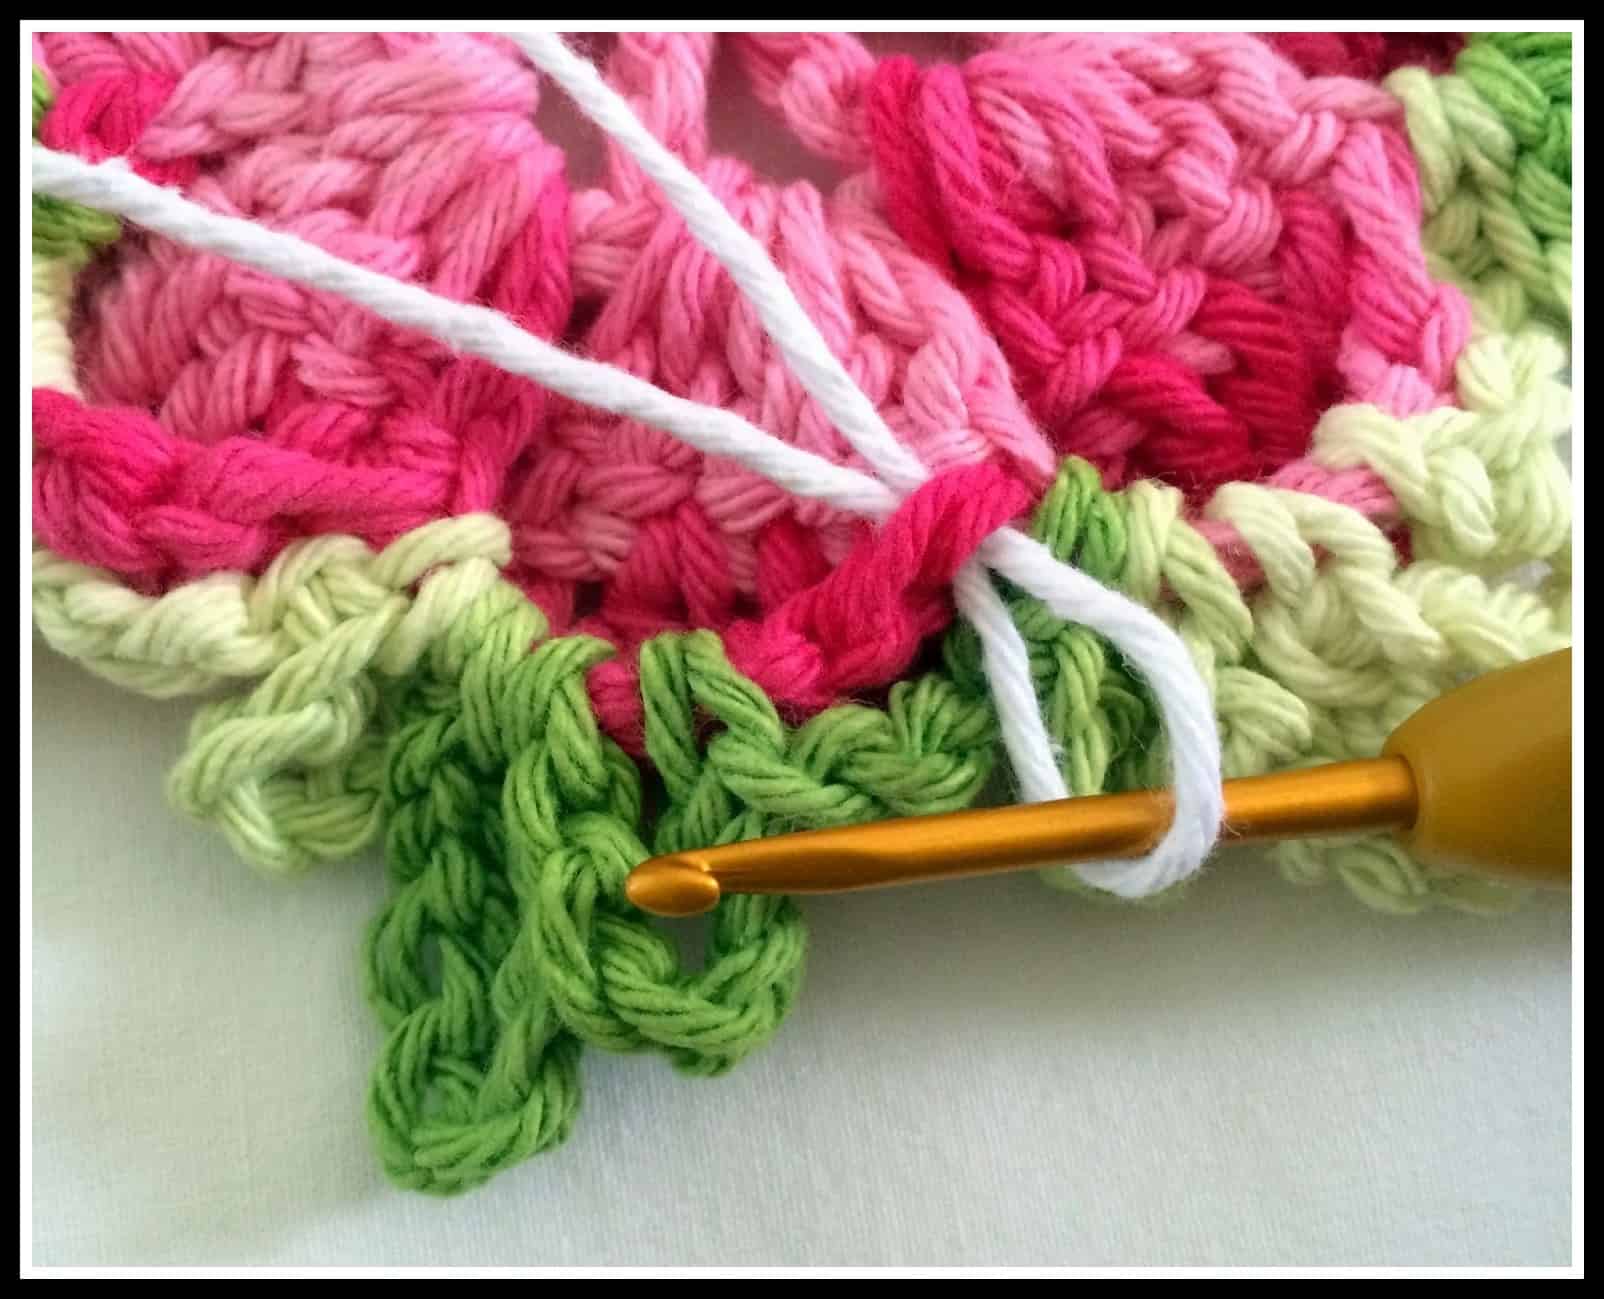 Aprender como fazer blusa de crochê pode ser uma terapia e uma fonte de renda.